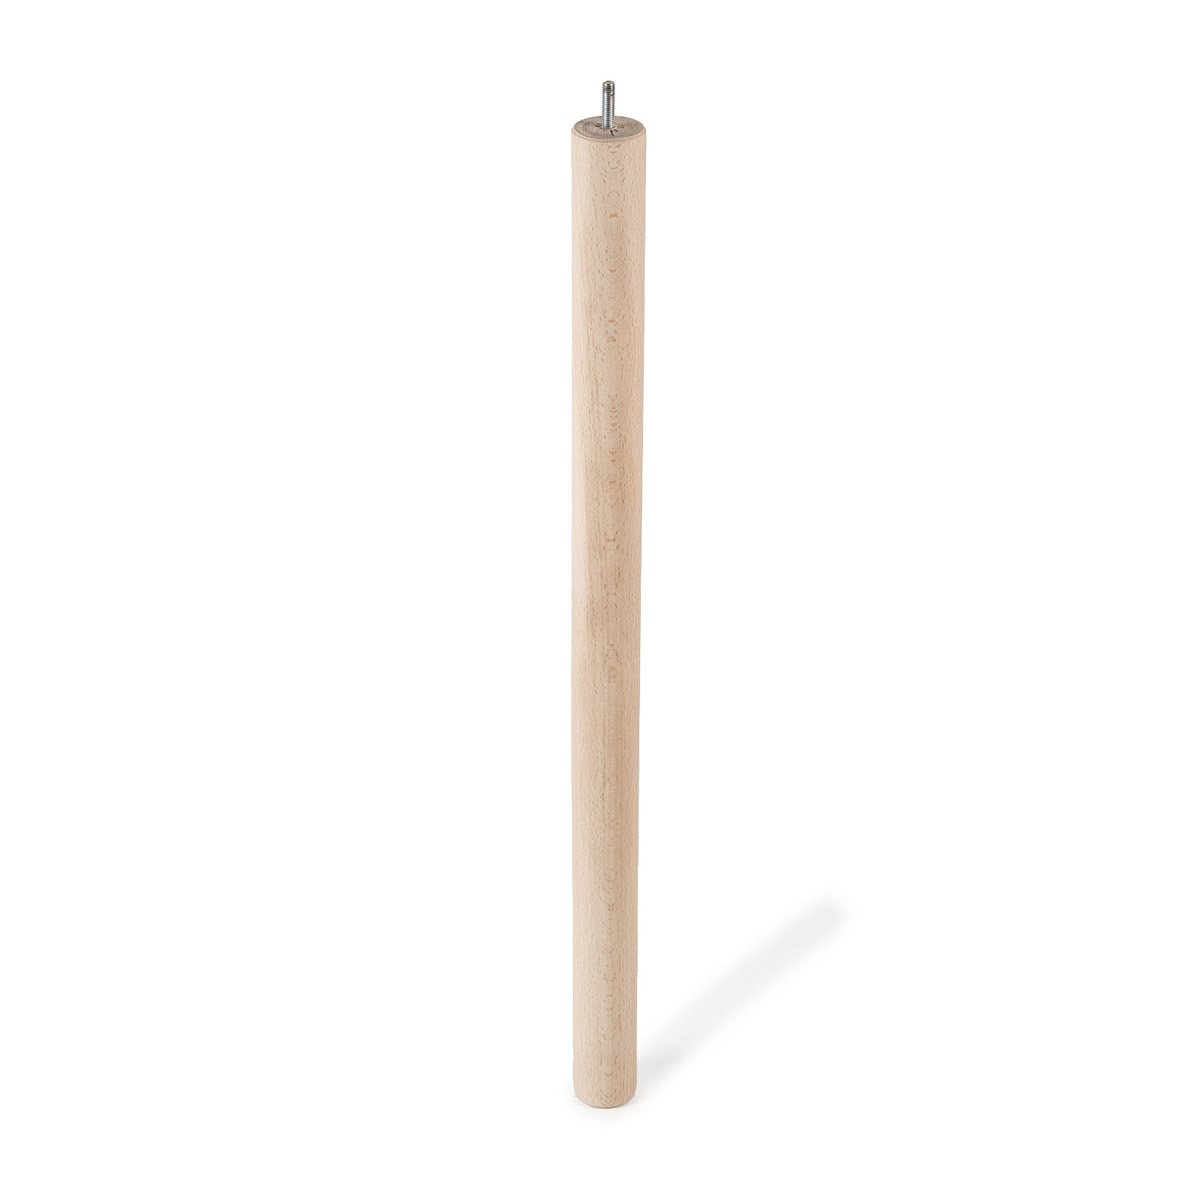 Pied cylindrique en bois d'une hauteur de 720 mm et finition hêtre brut. Dimensions: 46x46x720 mm